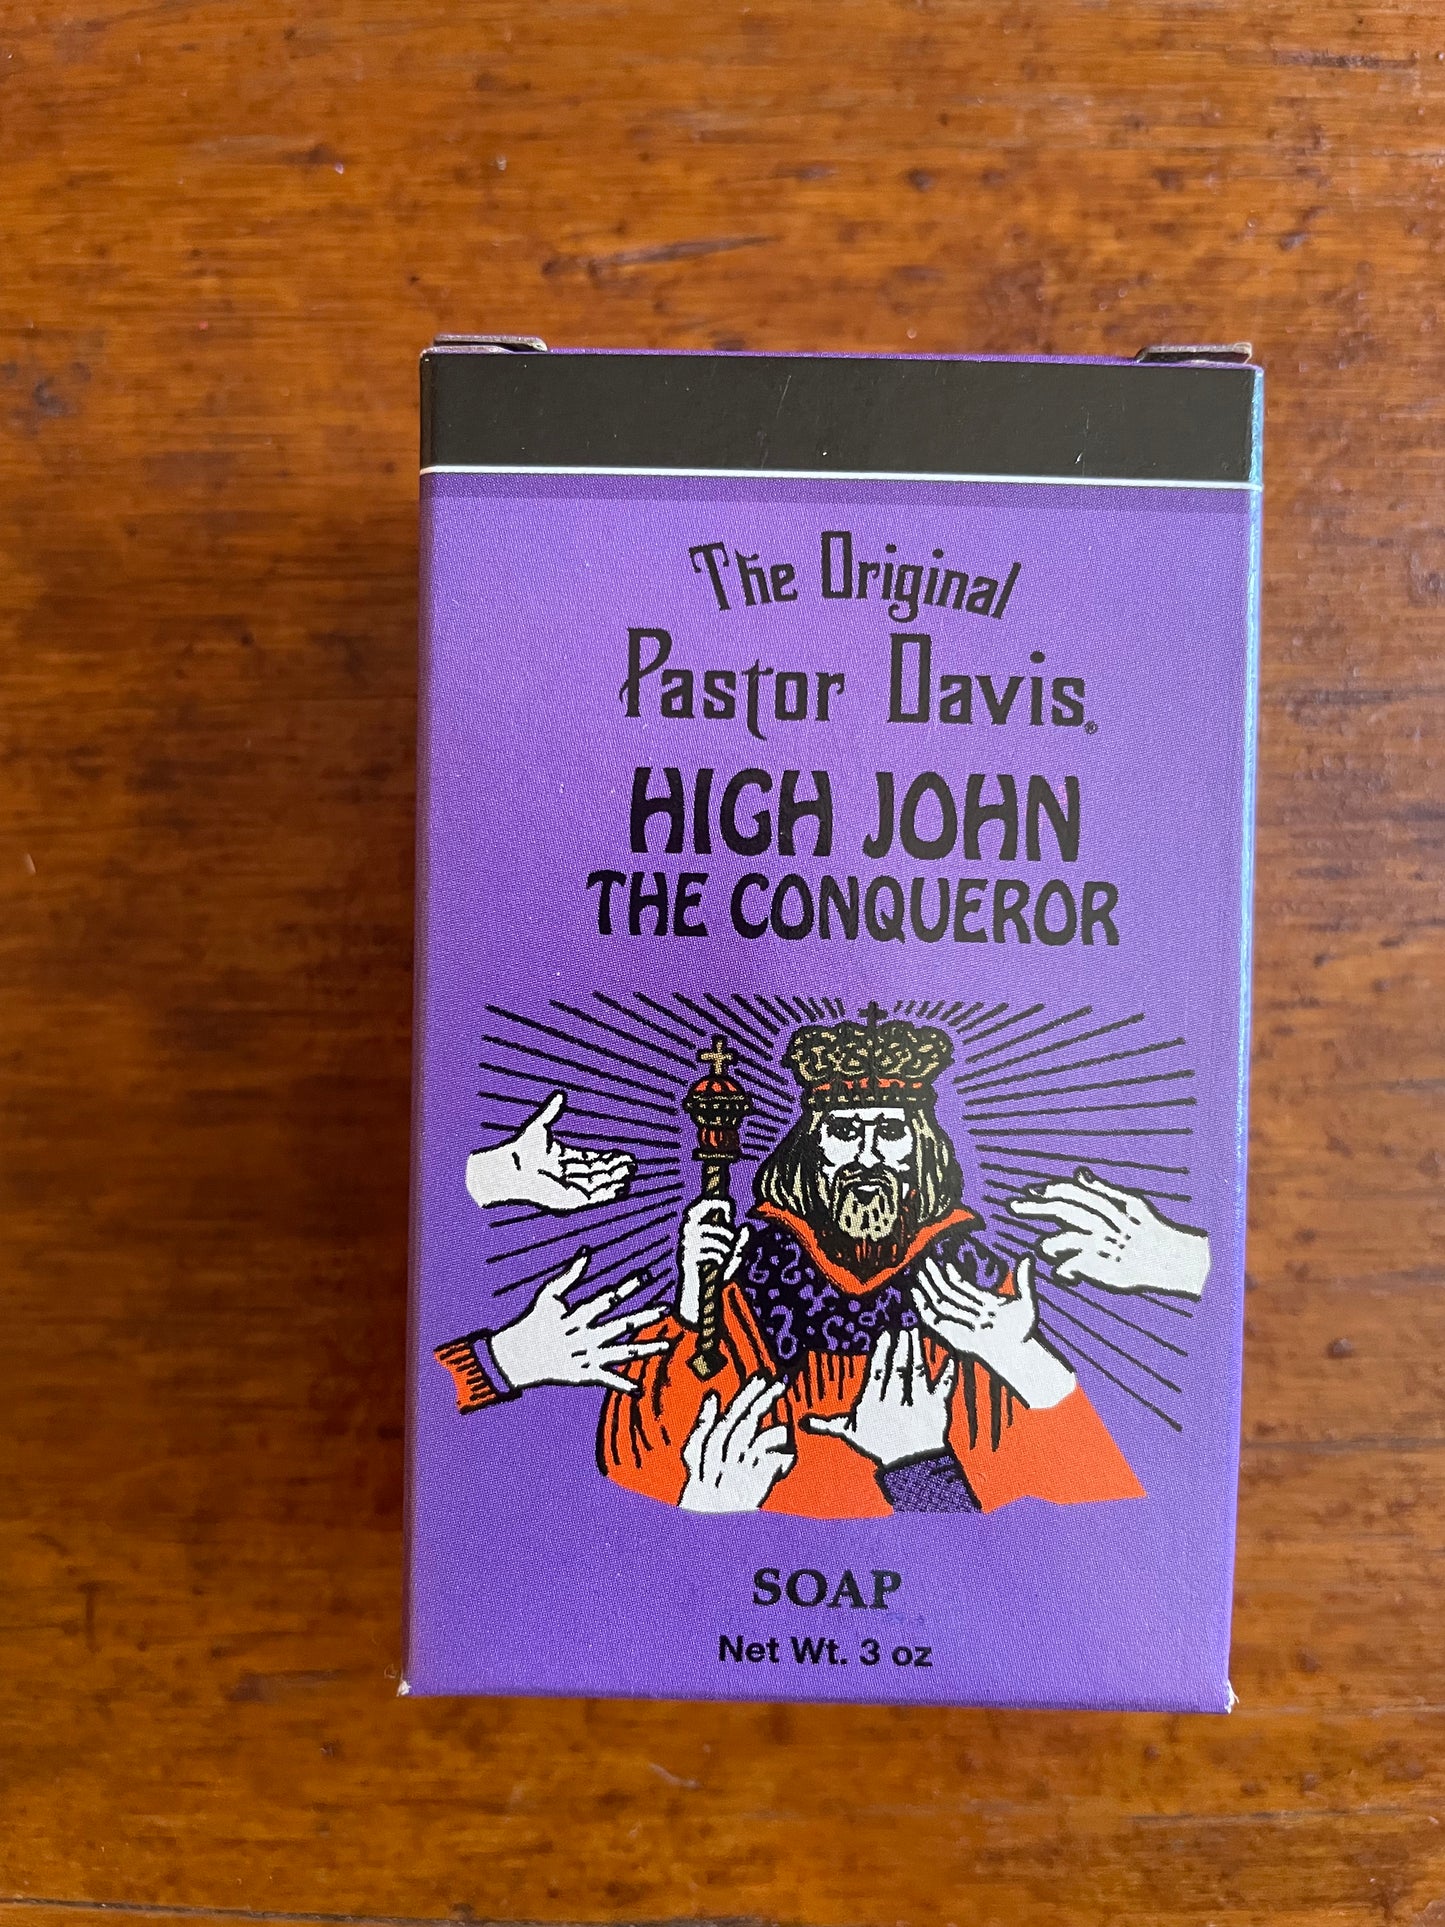 High John the Conqueror Soap